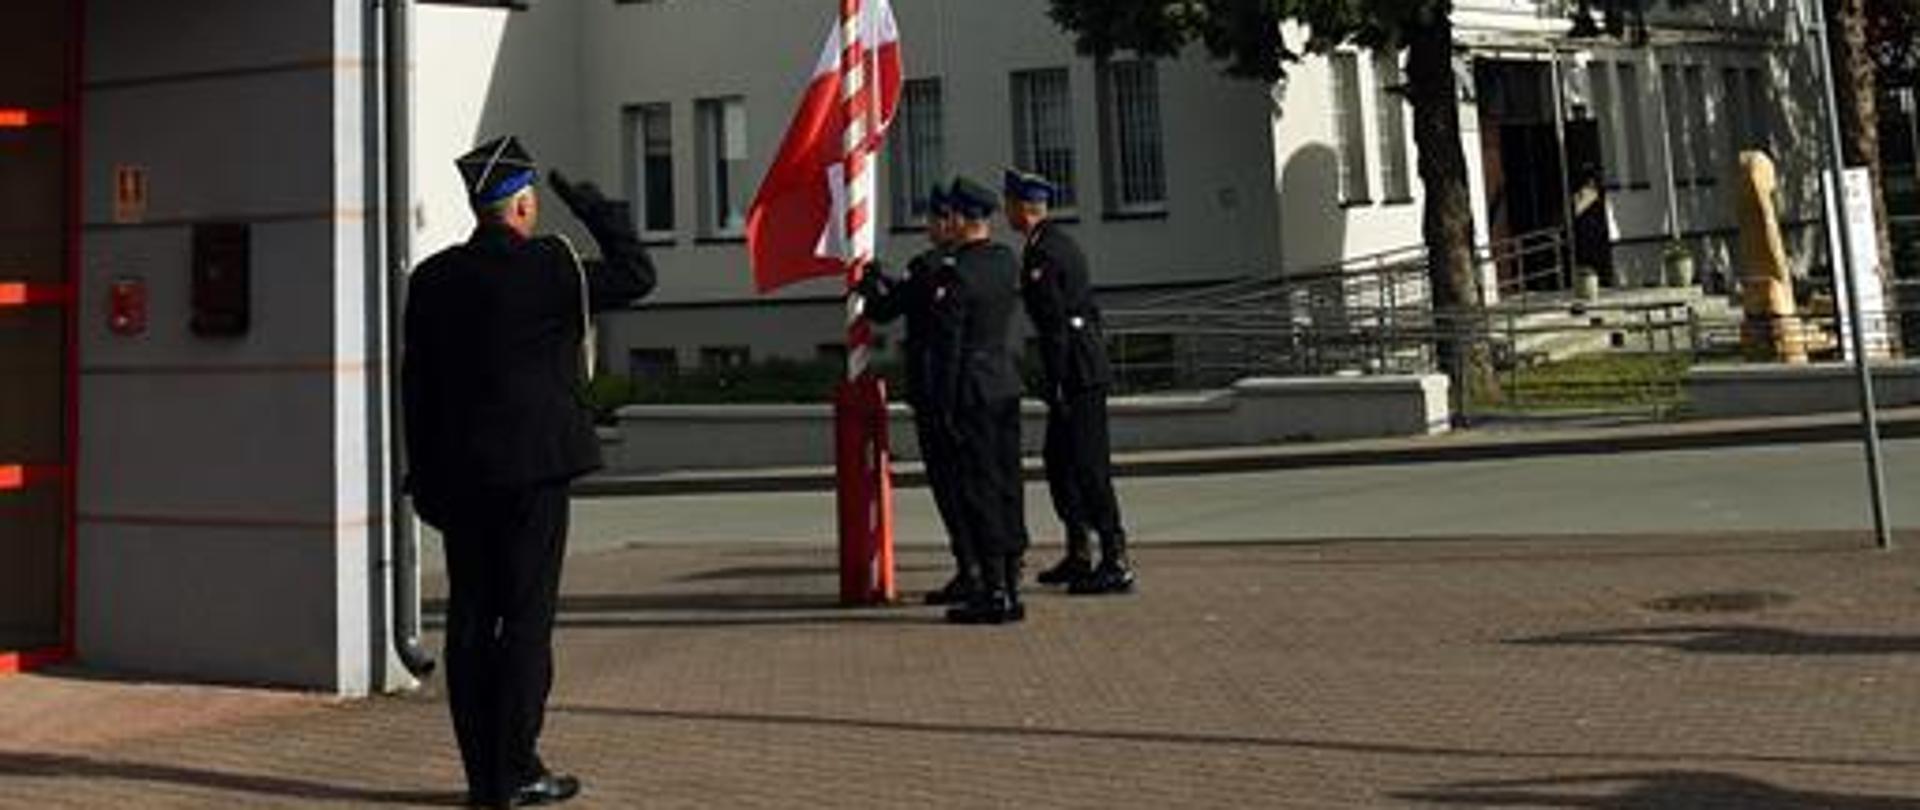 2 maja o godzinie 8.00 przed siedzibą Komendy Powiatowej Państwowej Straży Pożarnej w Staszowie odbyła się uroczysta zmiany służby związana z obchodami Dnia Flagi Rzeczypospolitej Polskiej.
